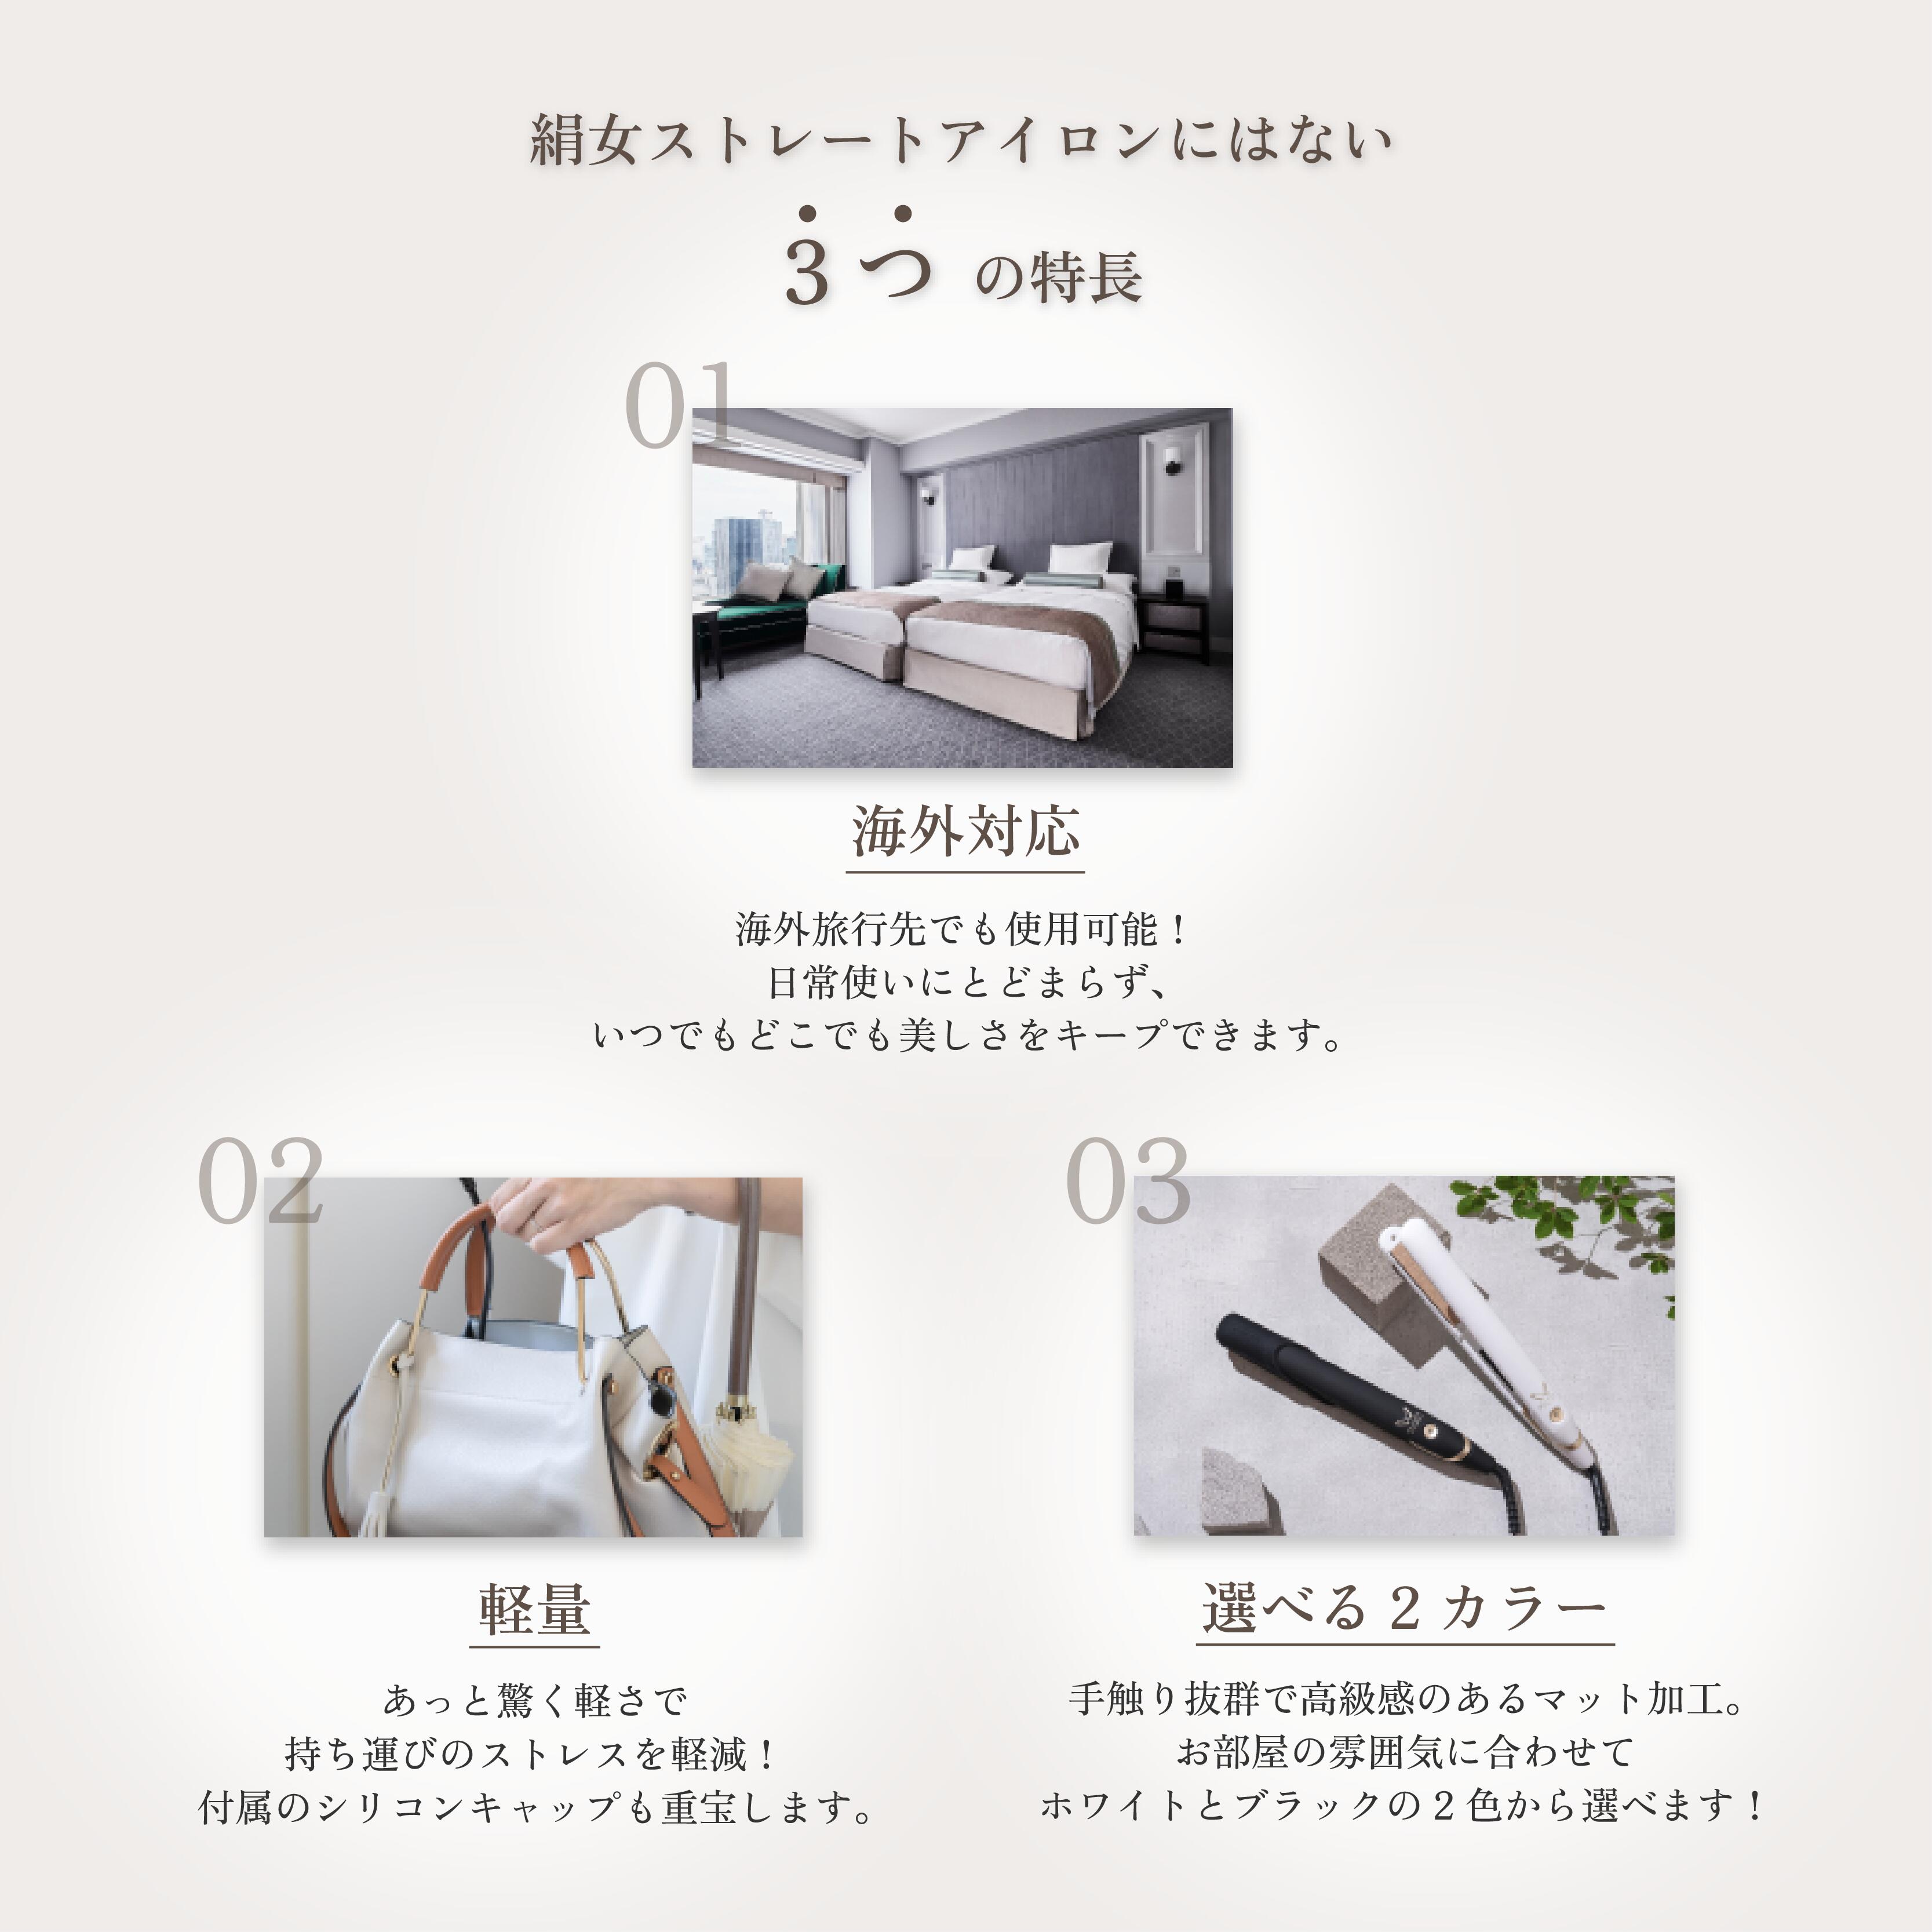 楽天市場】【公式】 KINUJO W-worldwide model- キヌージョワールド 絹